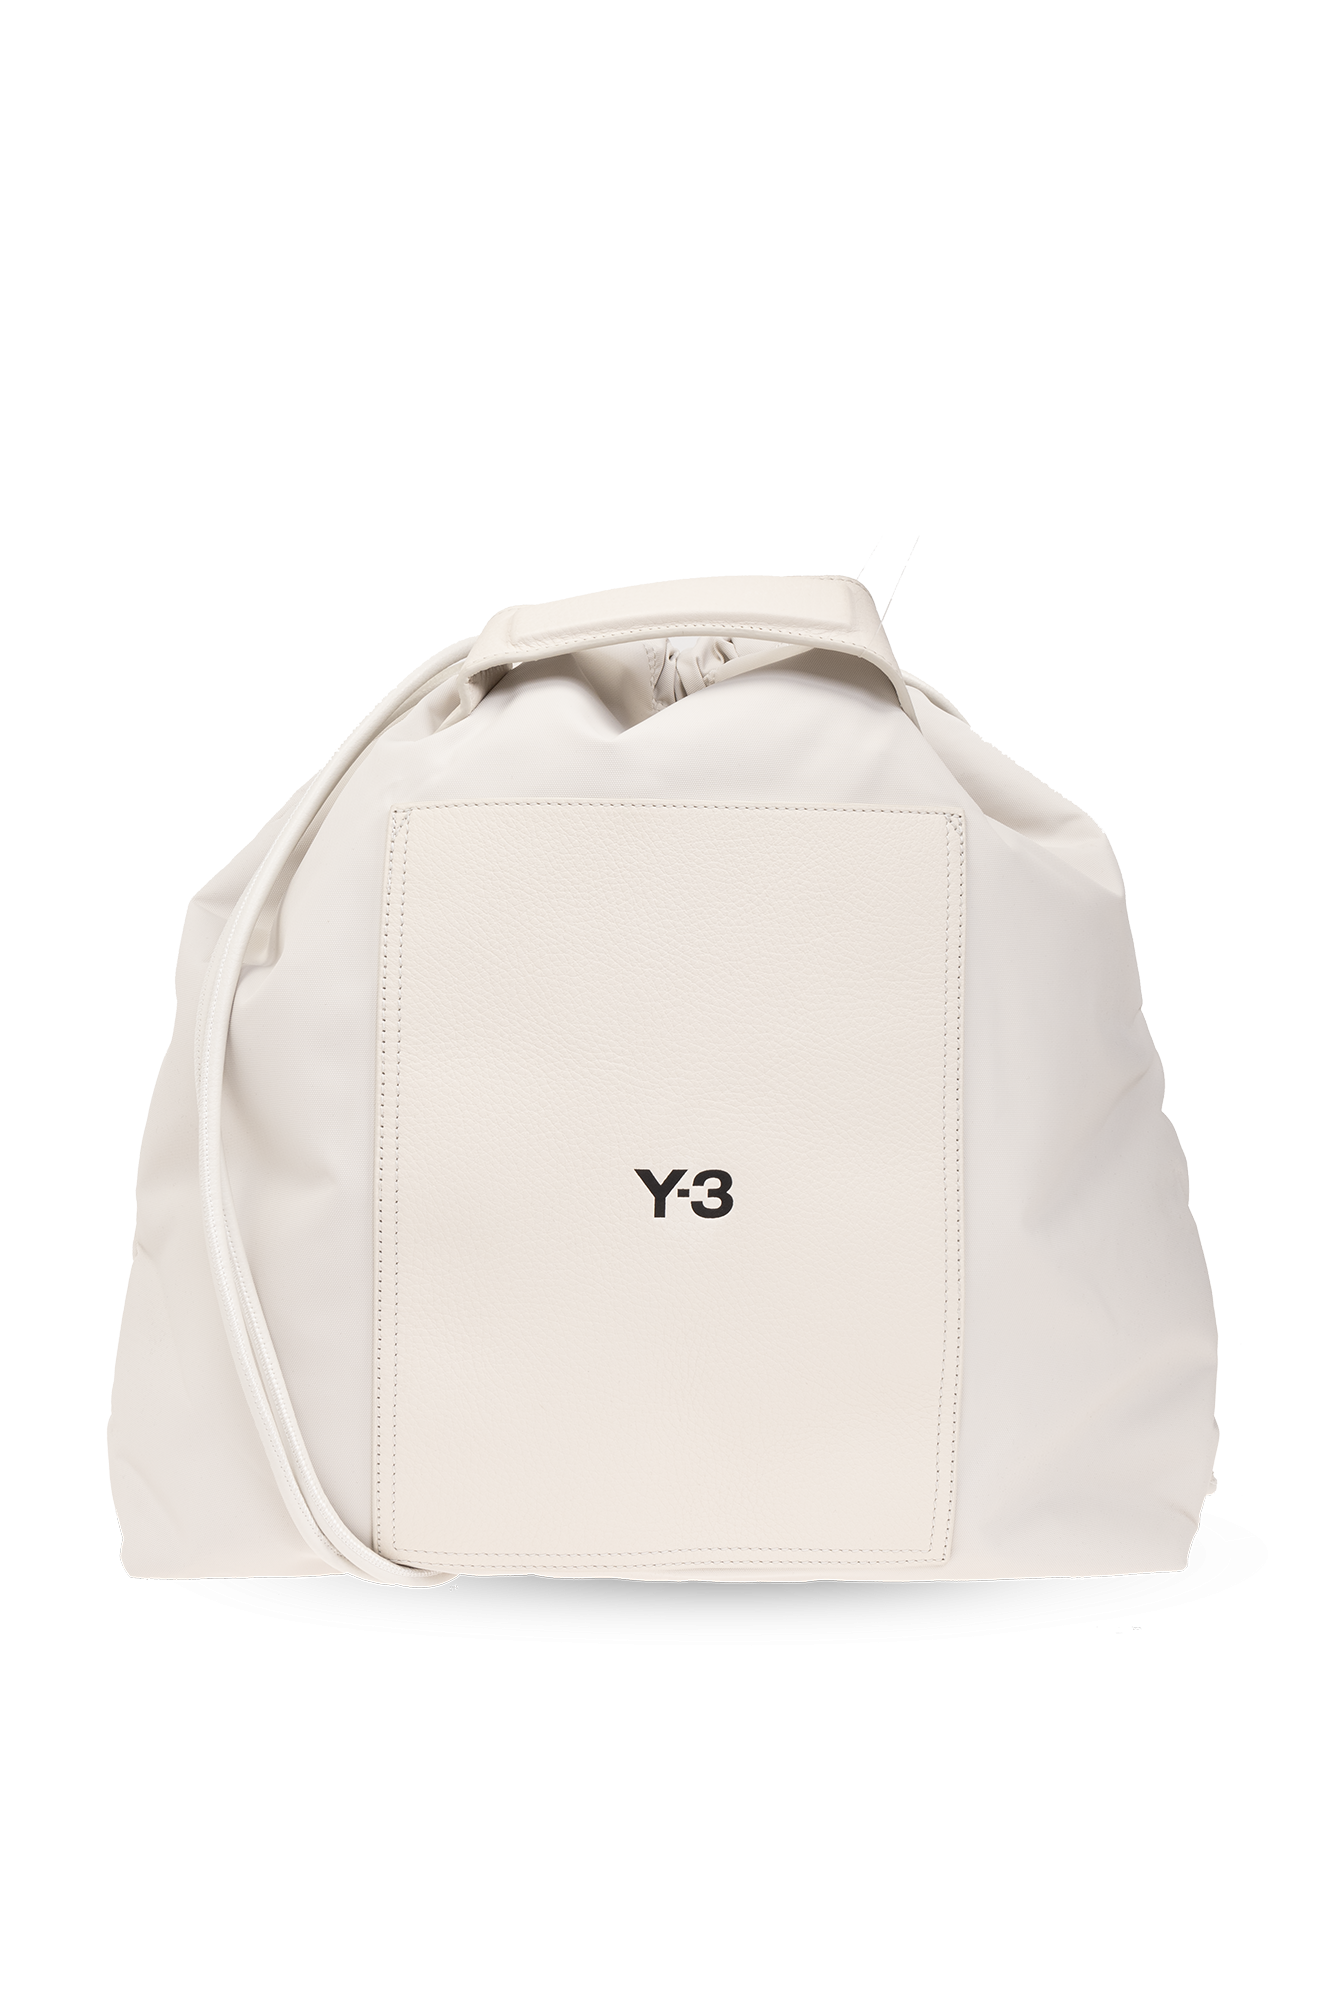 Cream Backpack with logo Y-3 Yohji Yamamoto - Vitkac GB